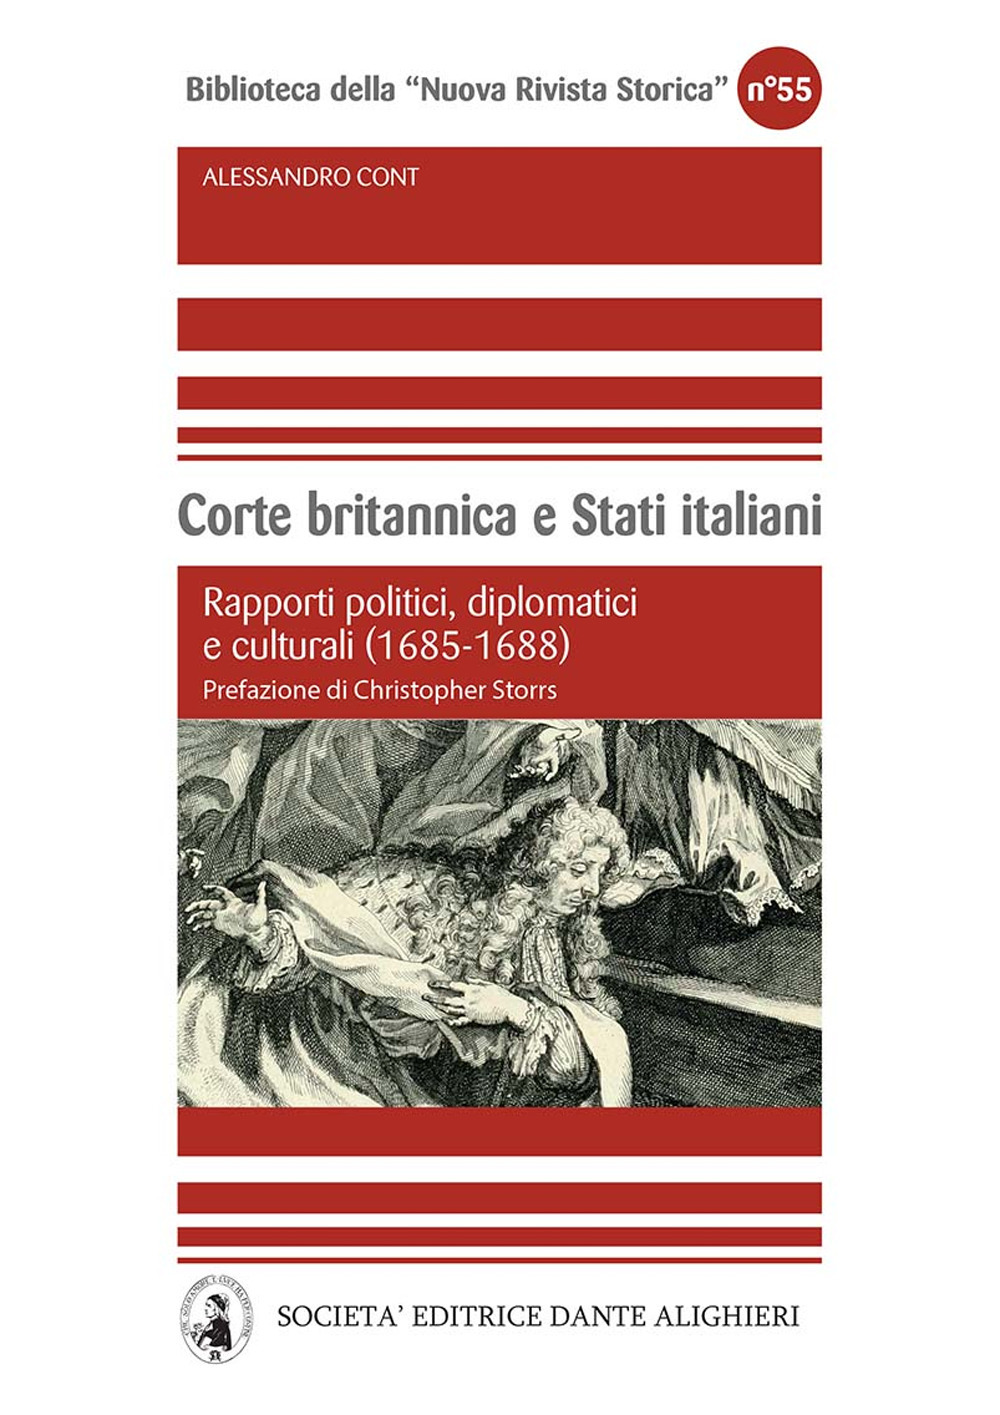 Corte britannica e stati italiani. Rapporti politici, diplomatici e culturali (1685-1688)